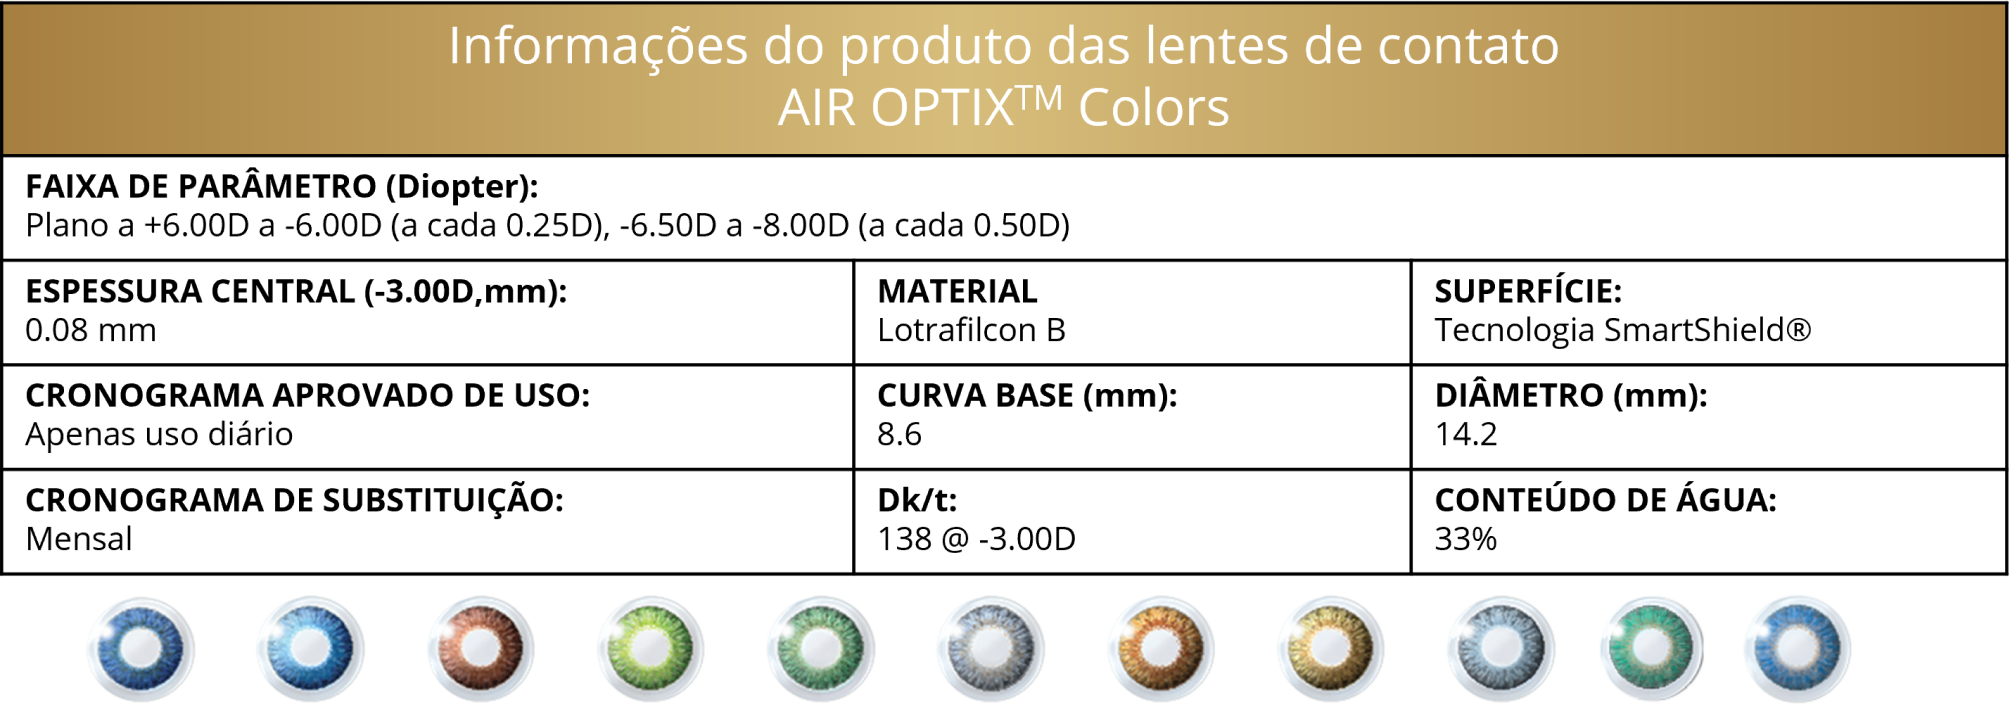 AIR OPTIX COLORS parameters